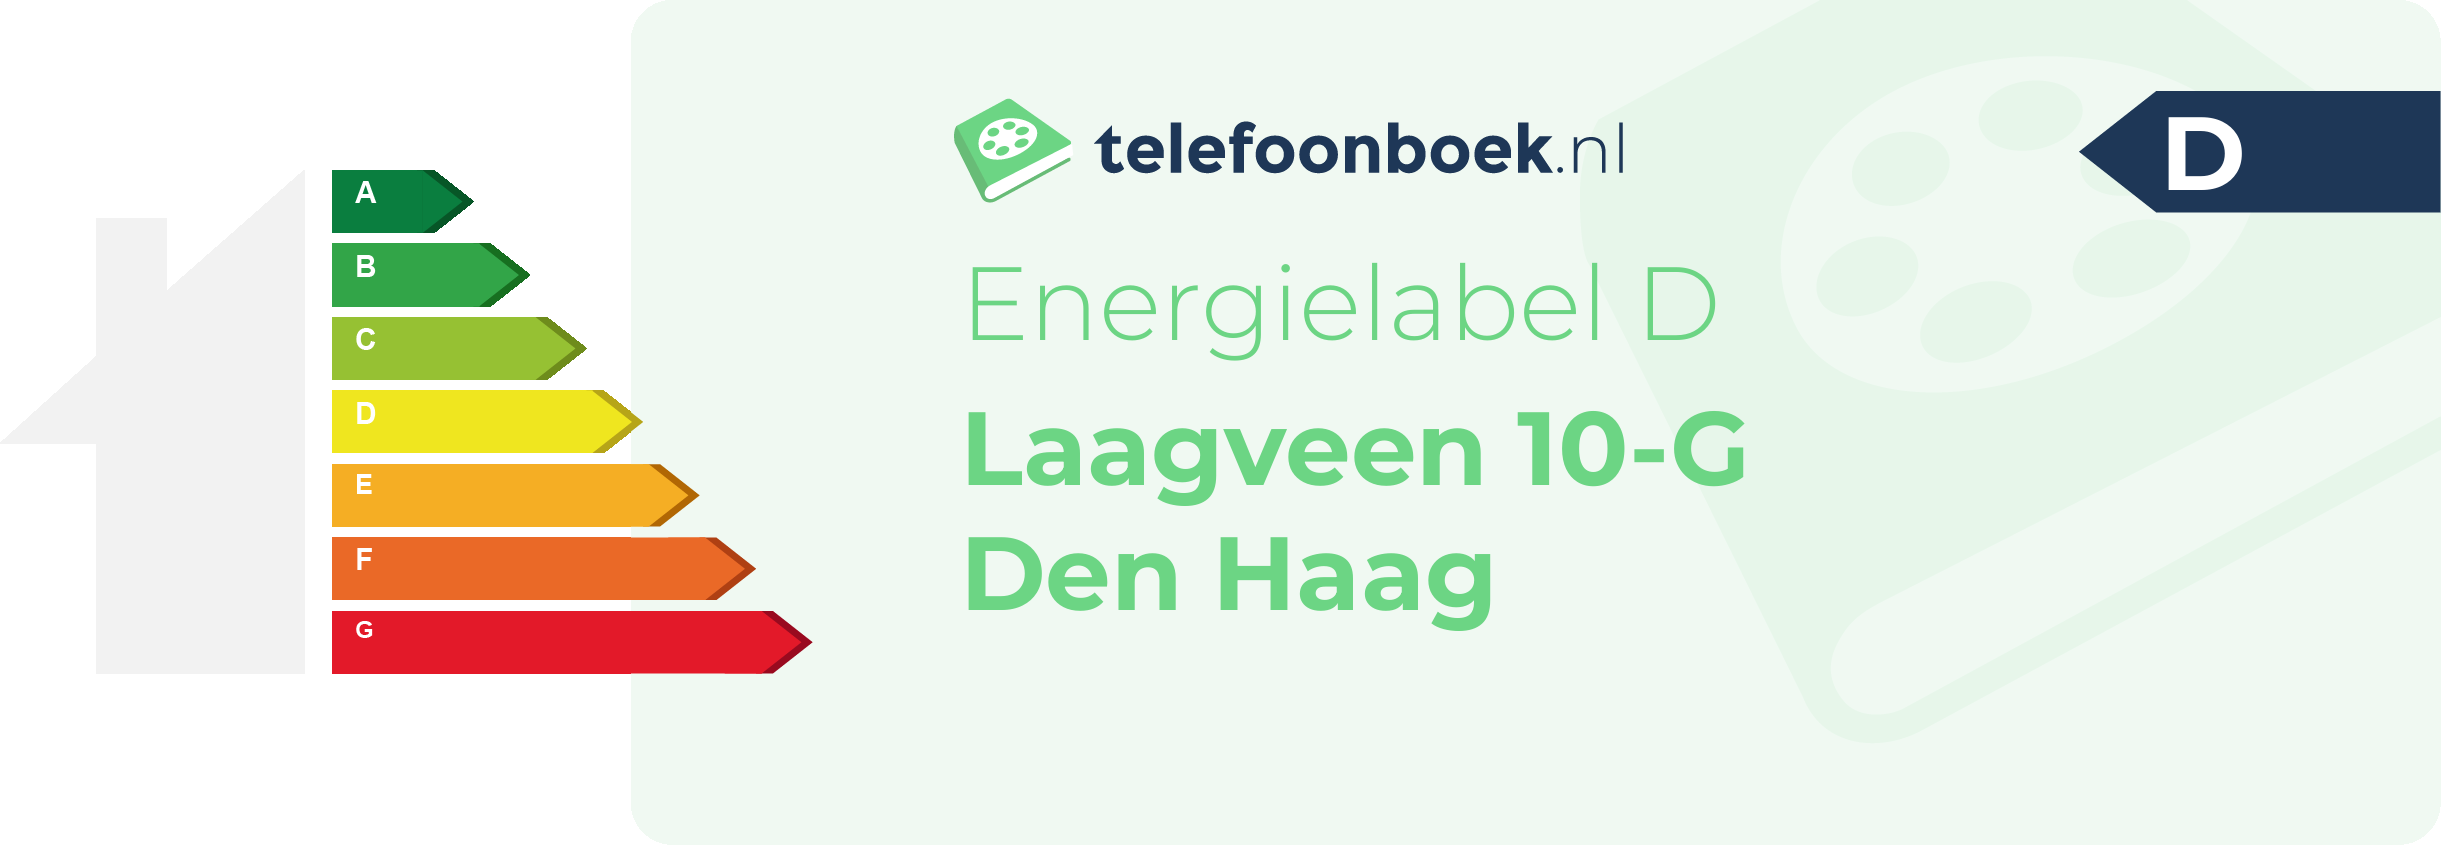 Energielabel Laagveen 10-G Den Haag